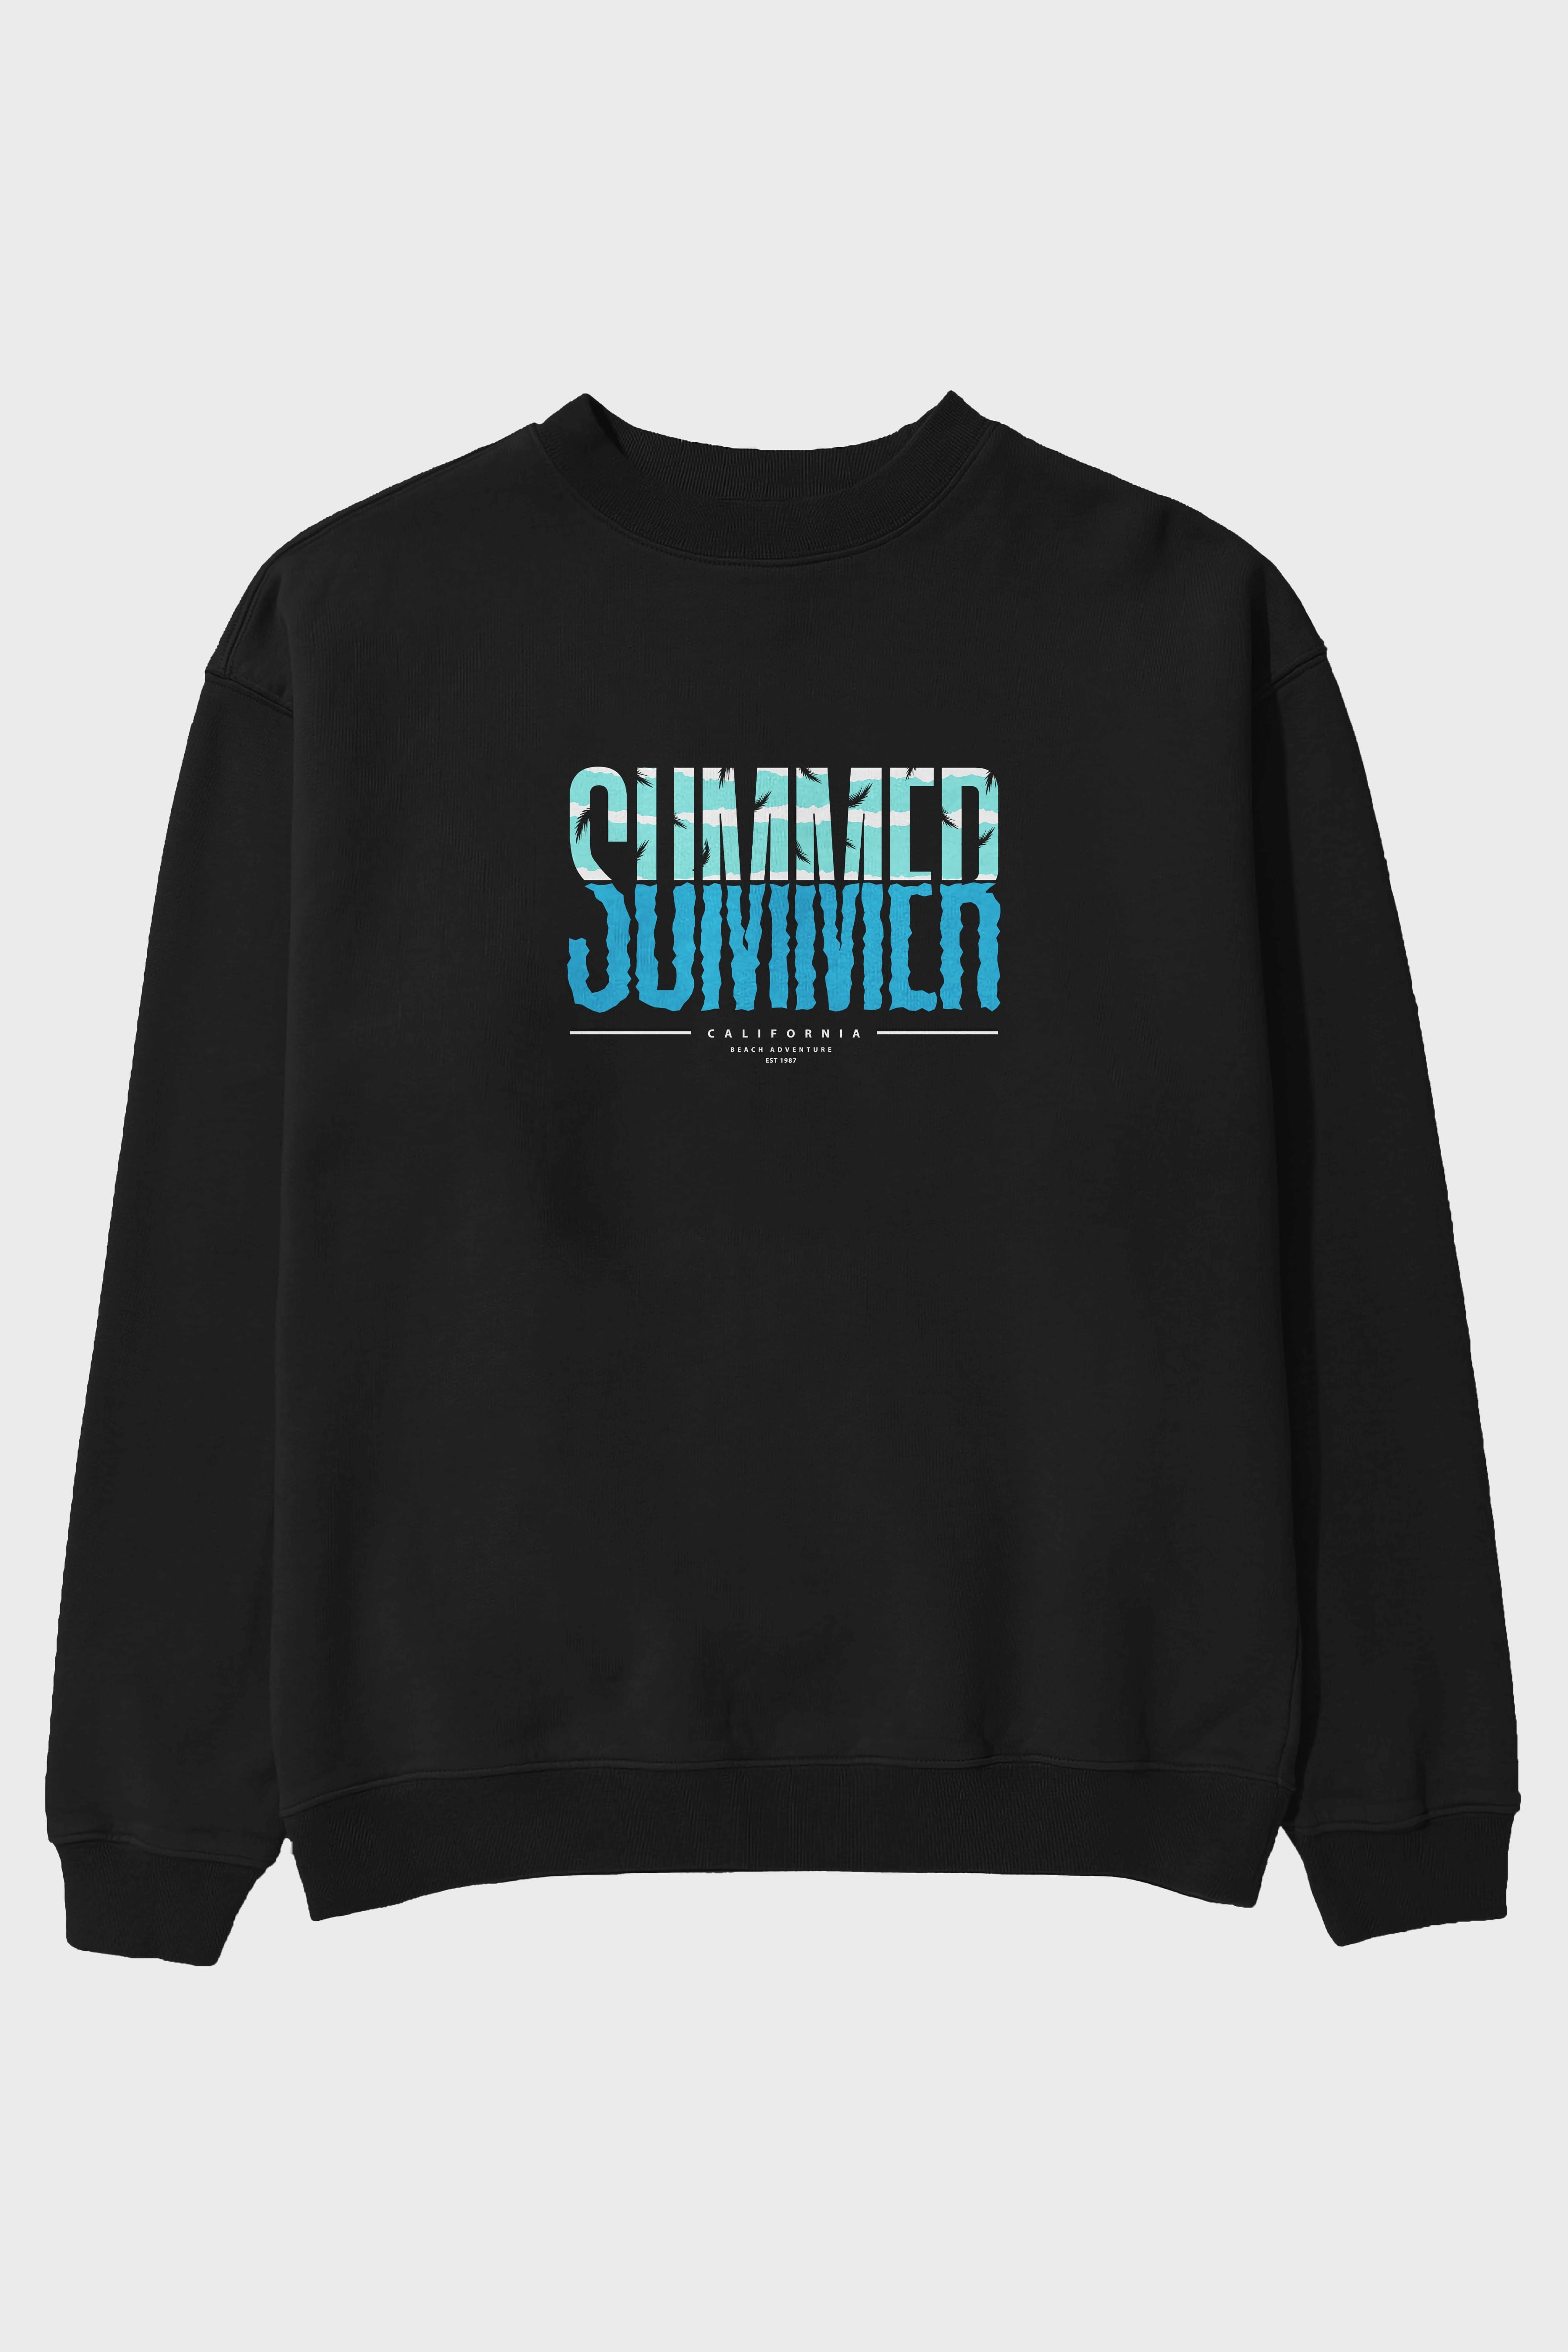 Summer California Ön Baskılı Oversize Sweatshirt Erkek Kadın Unisex